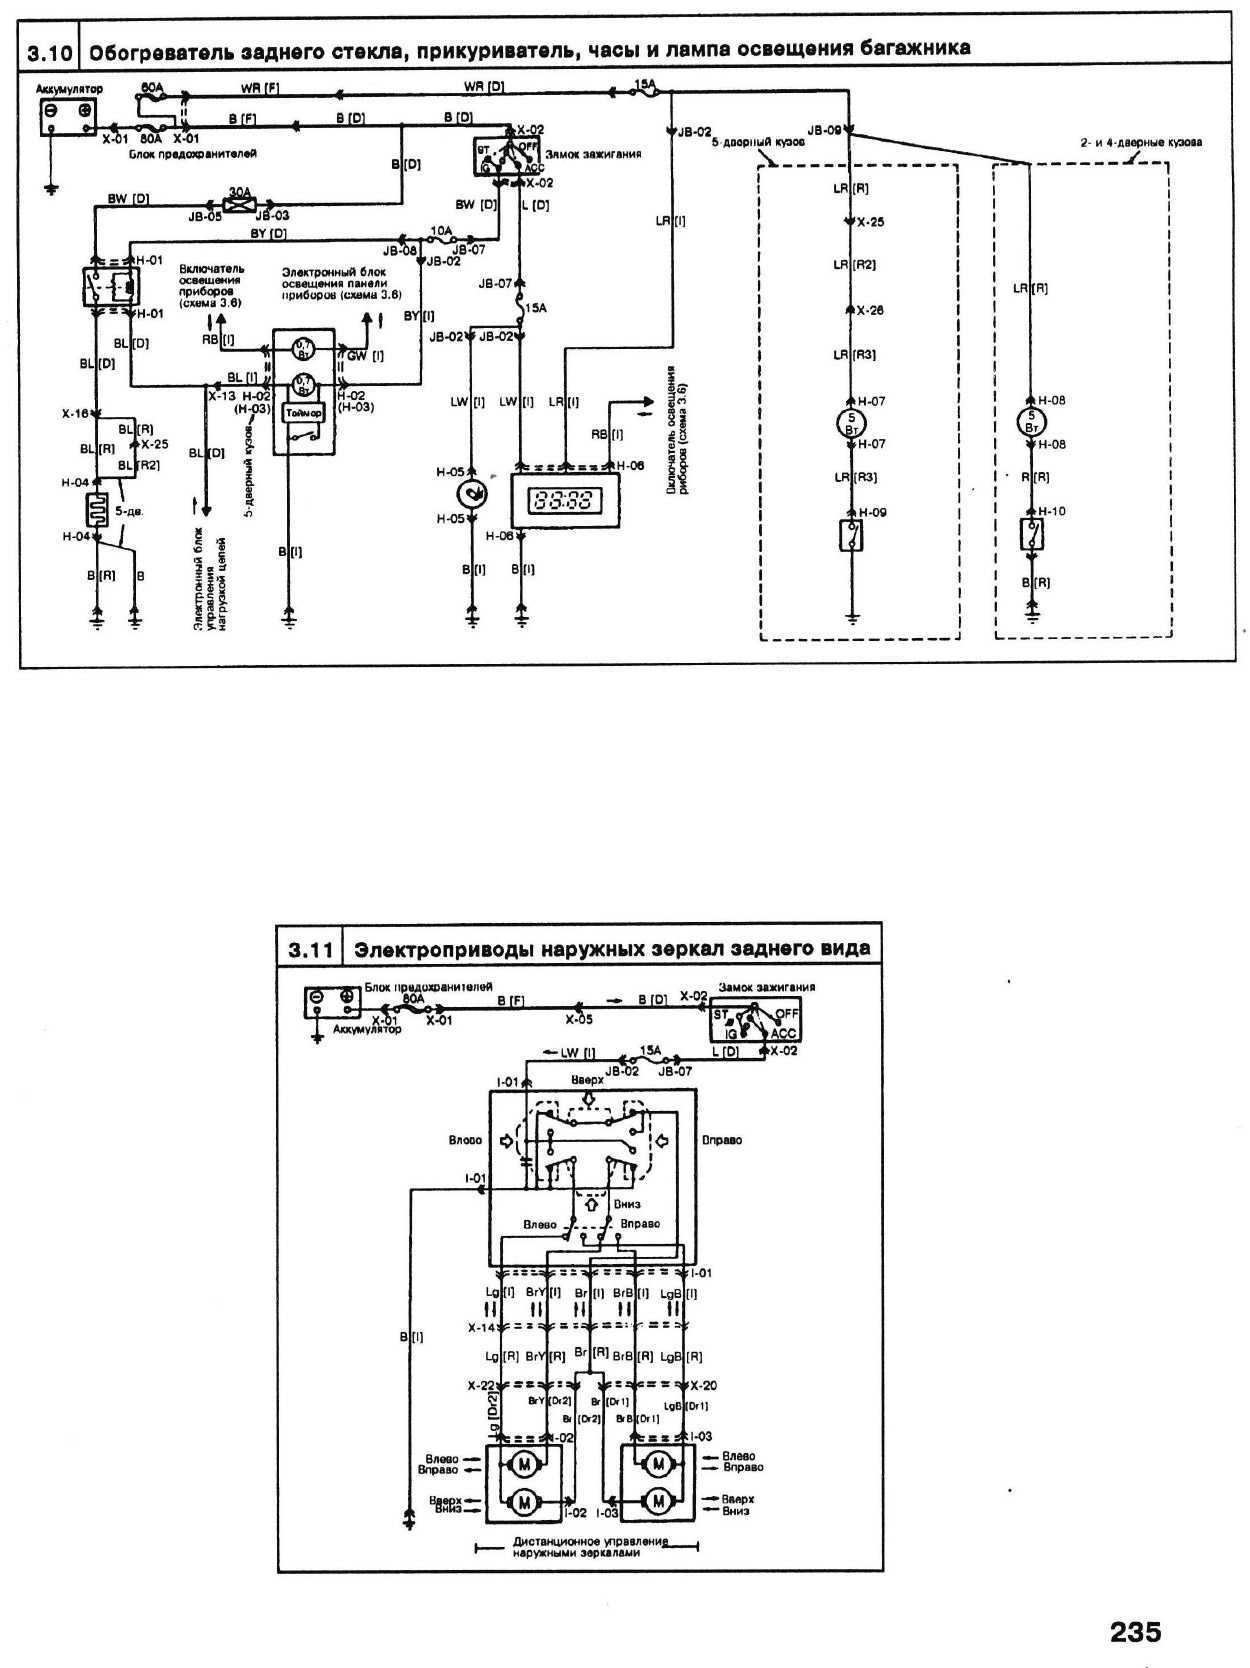 Руководство mazda 626 ge, 626 gf 1.8, 2.5, 2.0 1992-2002 - страница 1